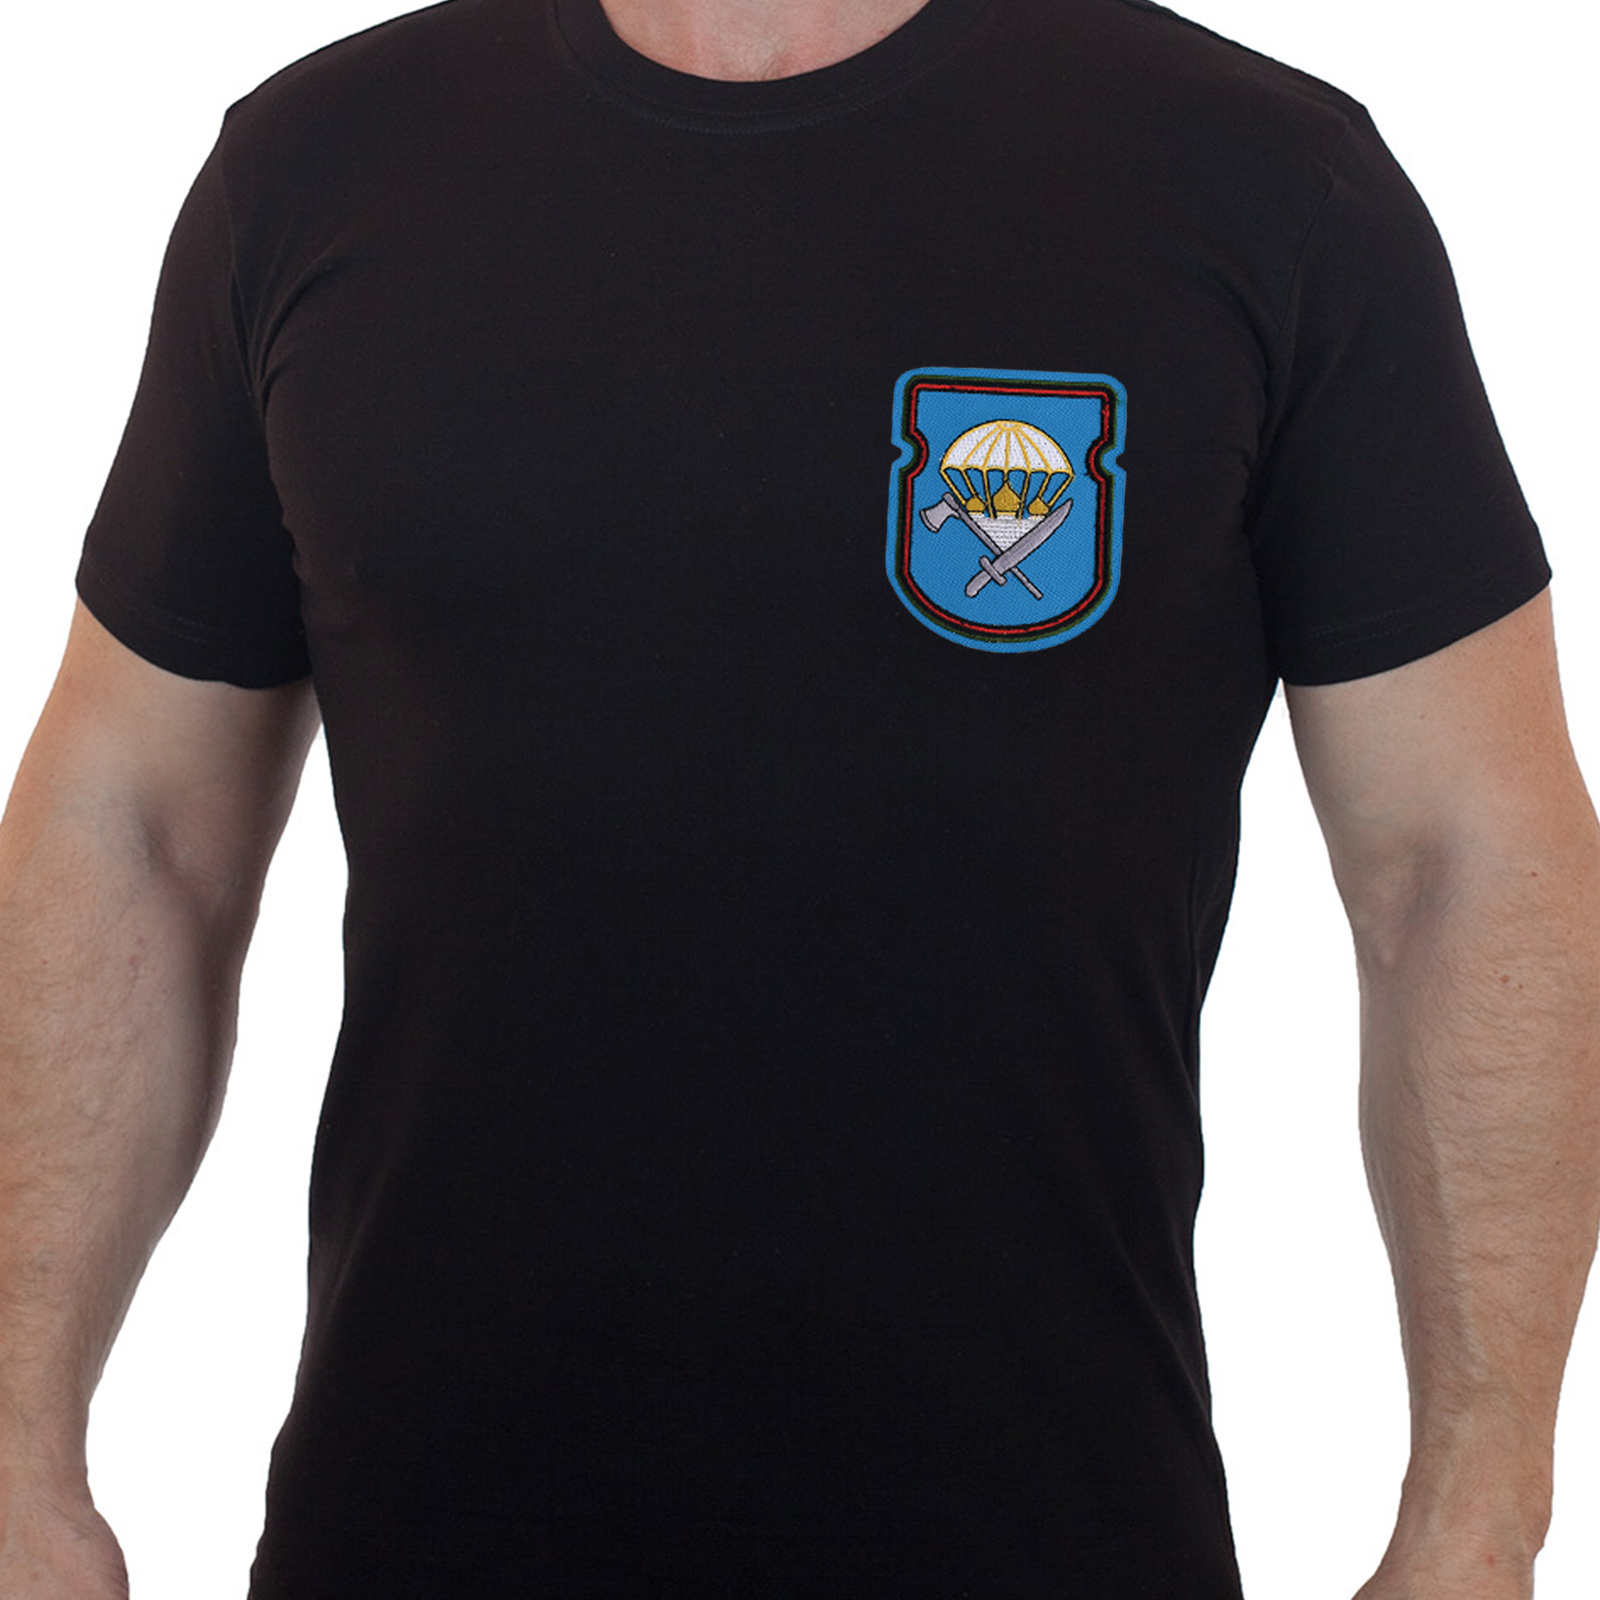 Купить армейскую черную футболку с вышитым знаком 388-й ОИСБ 106-ой ВДД  по приятной цене